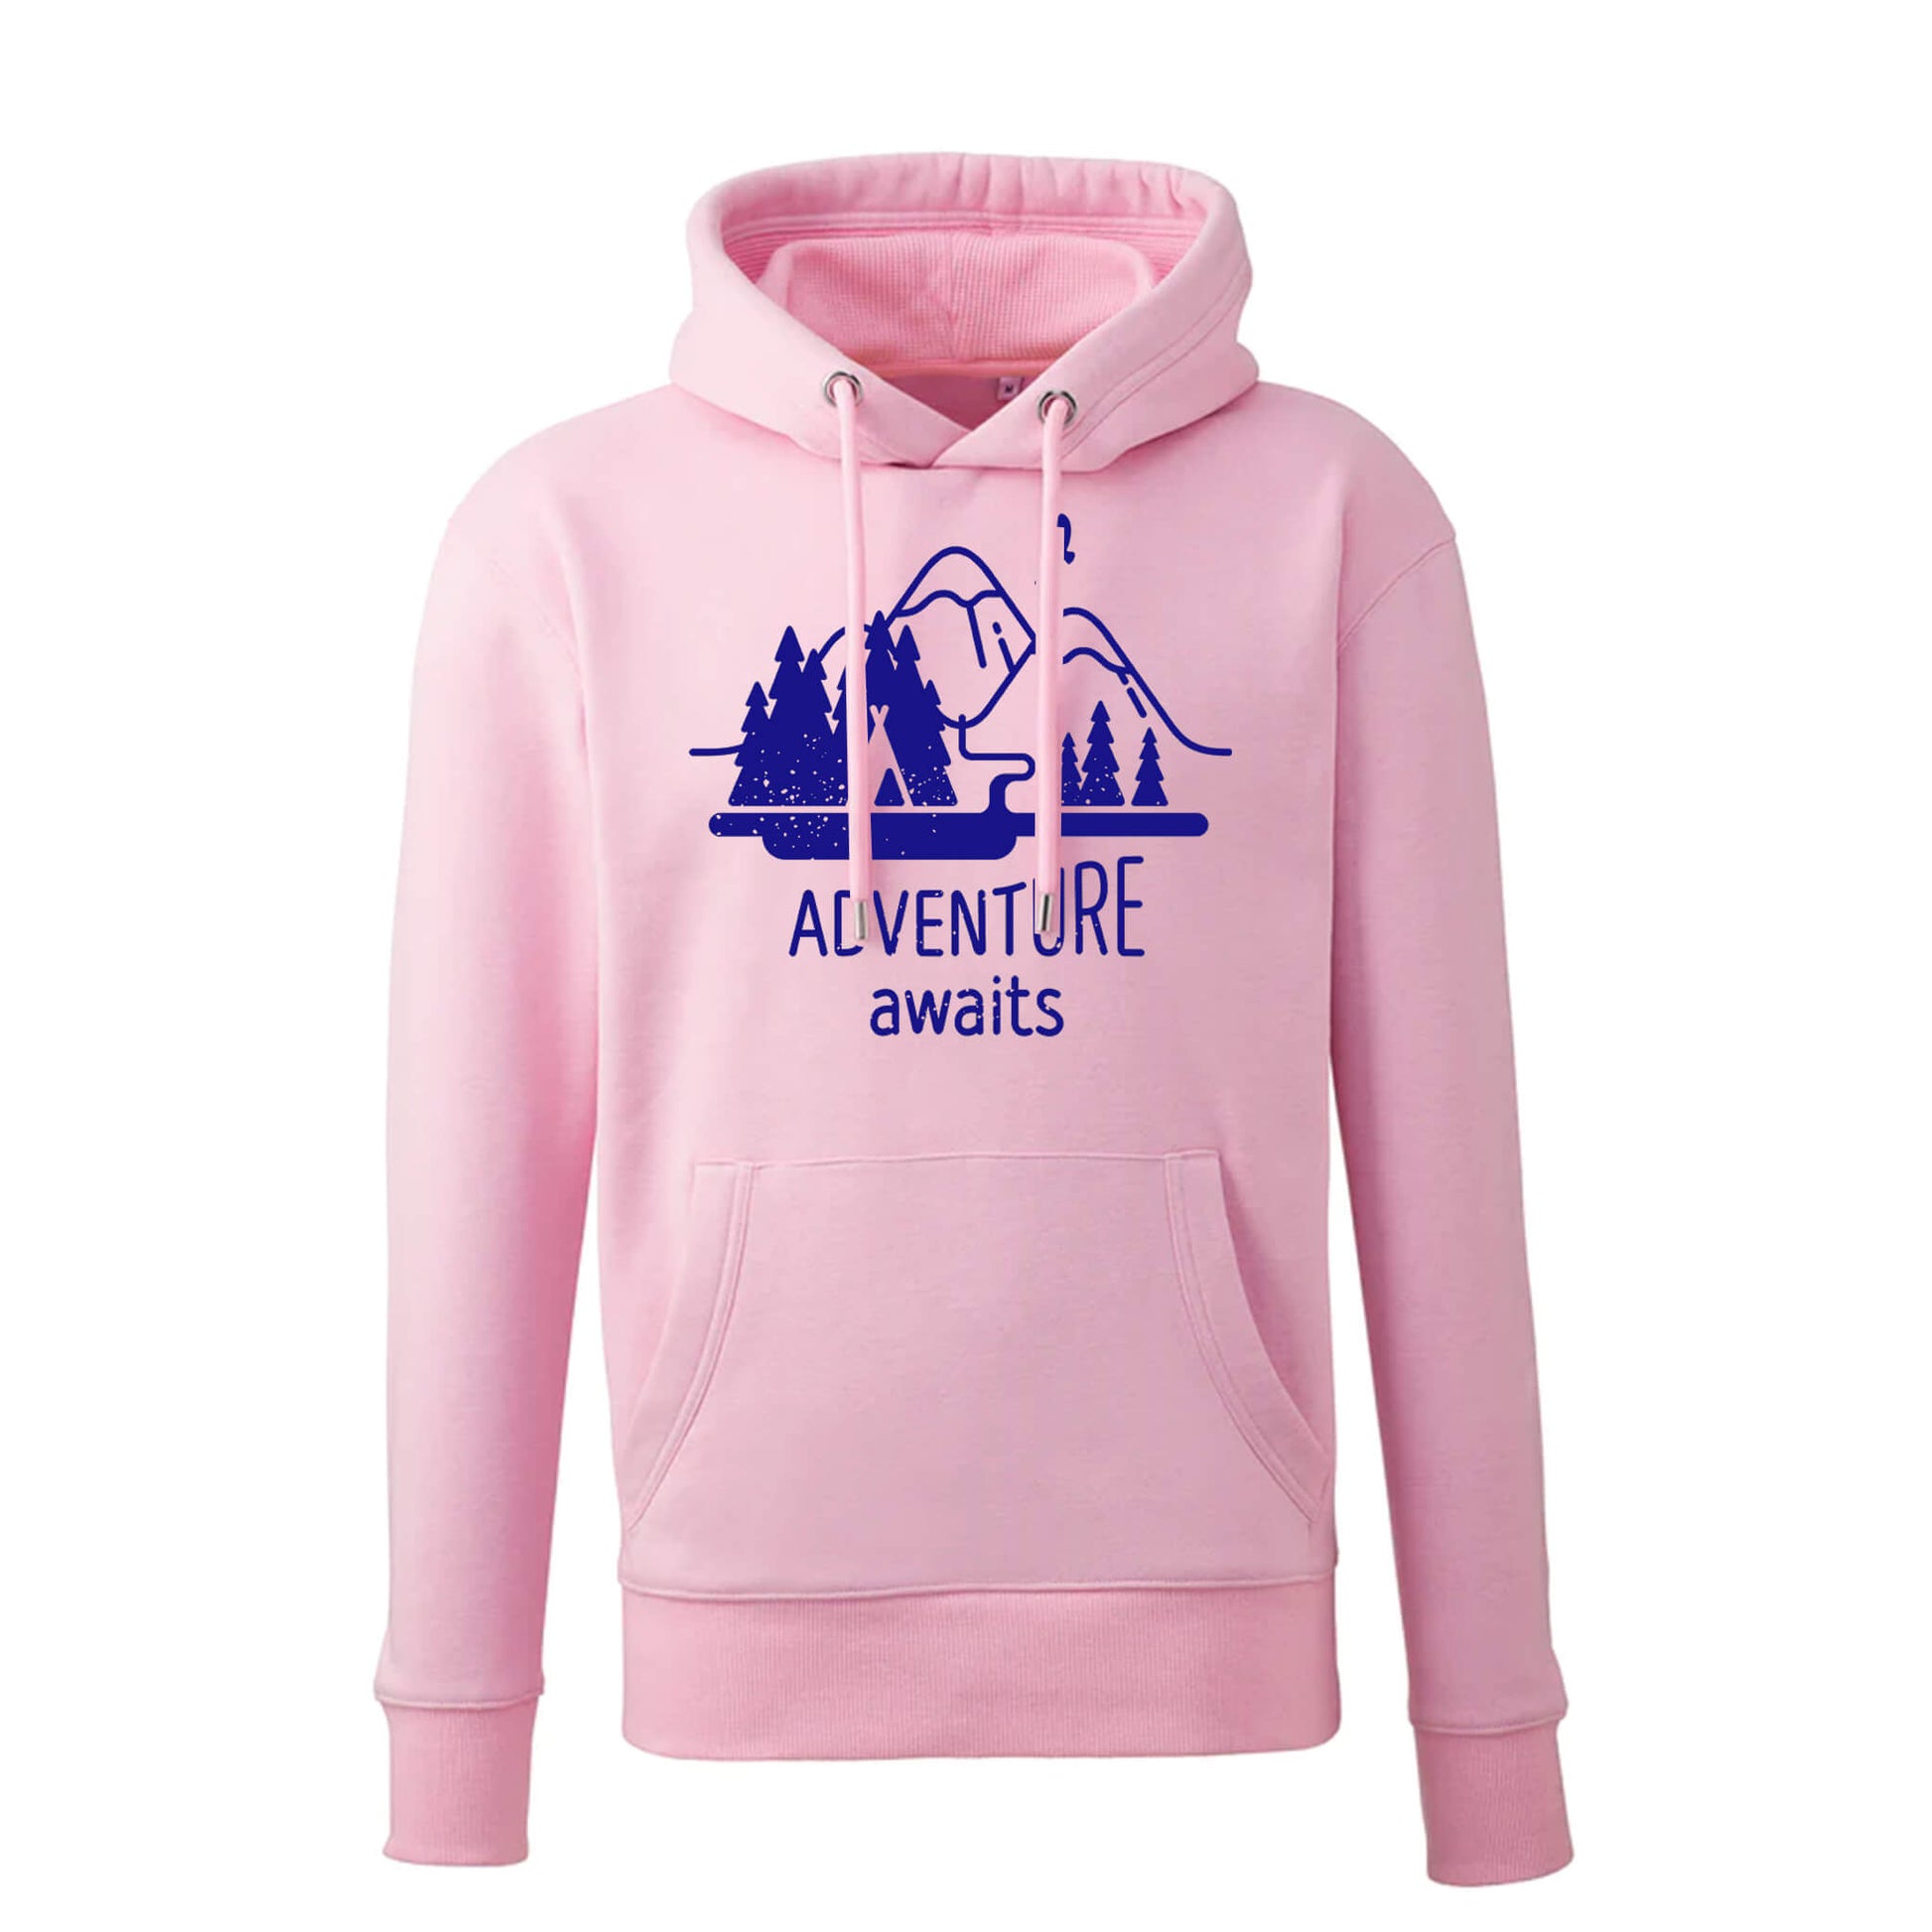 adventure awaits vegan pink hoodie